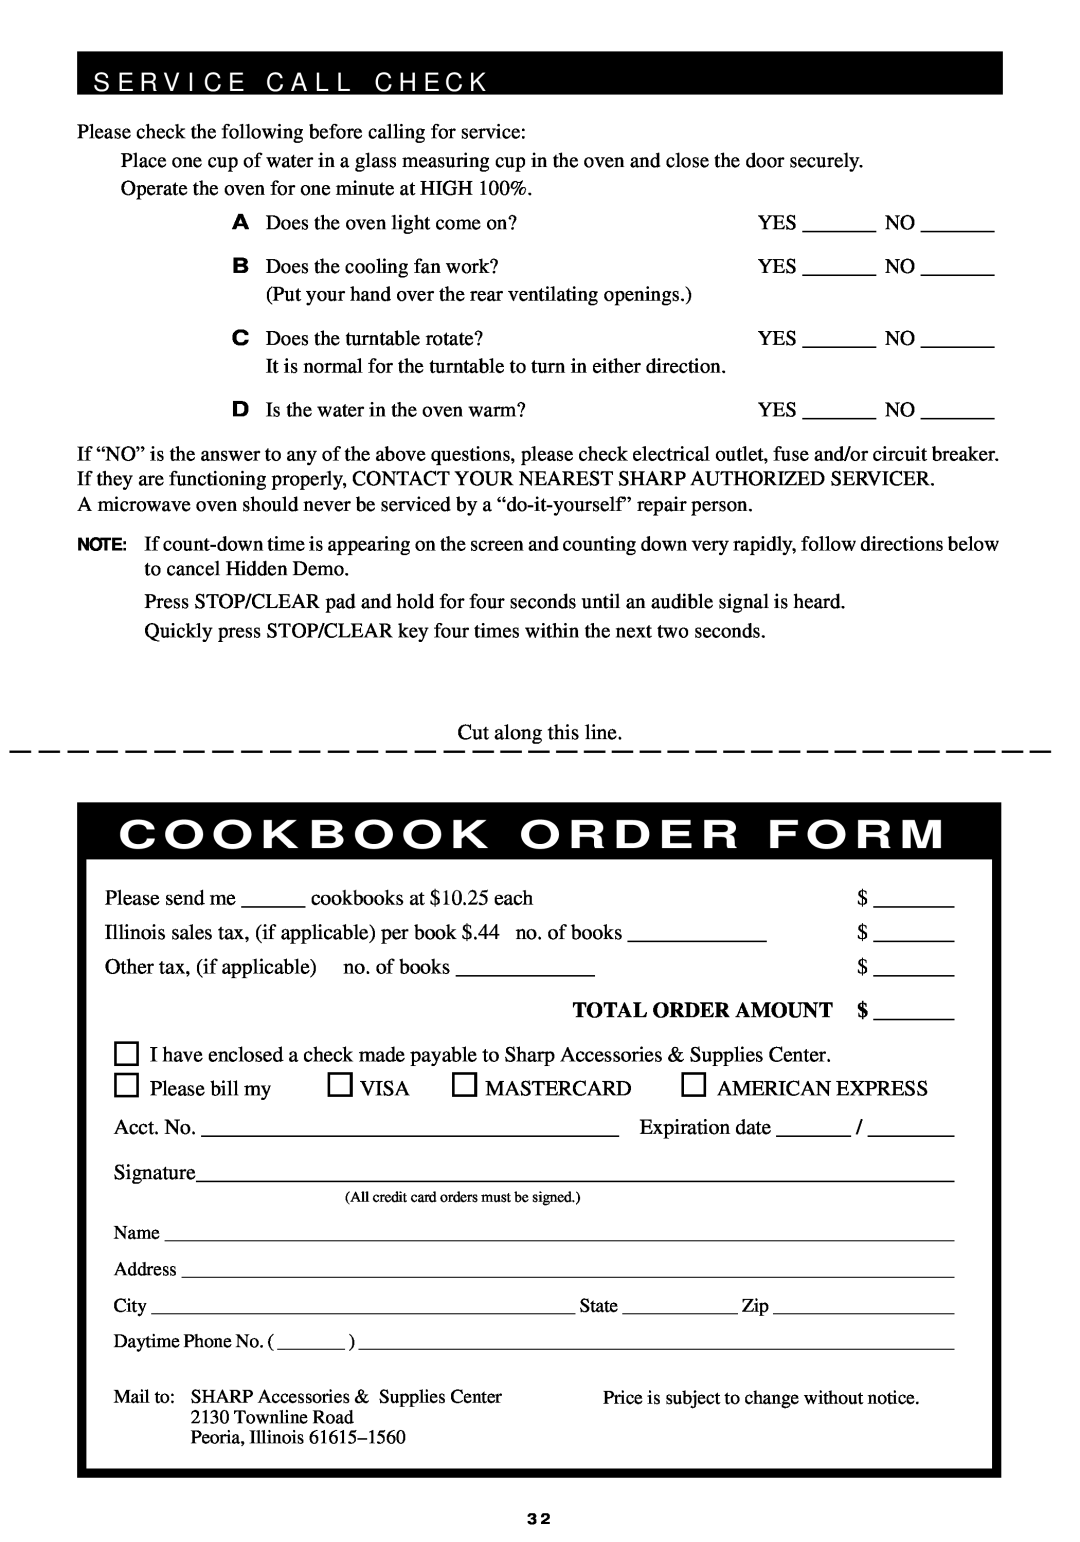 Sharp R-440/540 operation manual S E R V I C E C A L L C H E C K, Cookbook Order Form 